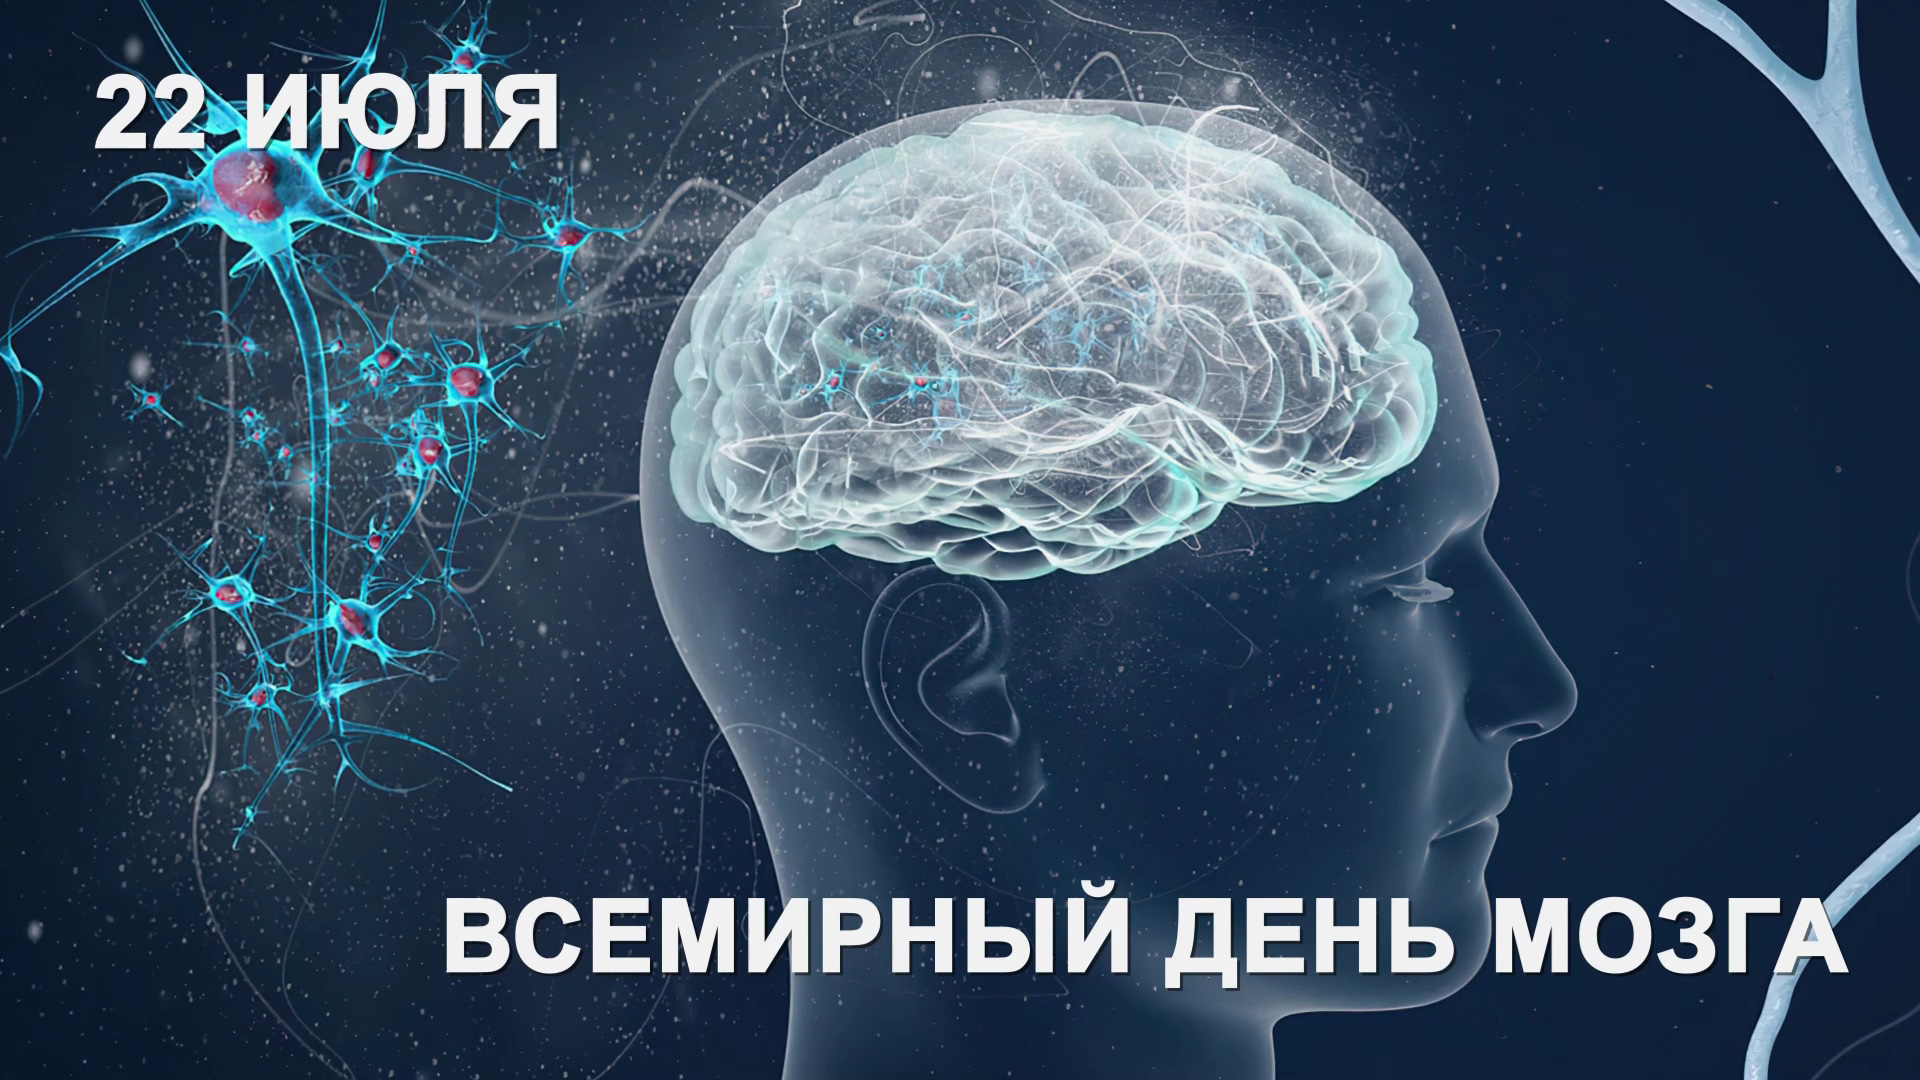 Brain now. Новый мозг. Мы это наш мозг. Узнай тайны.